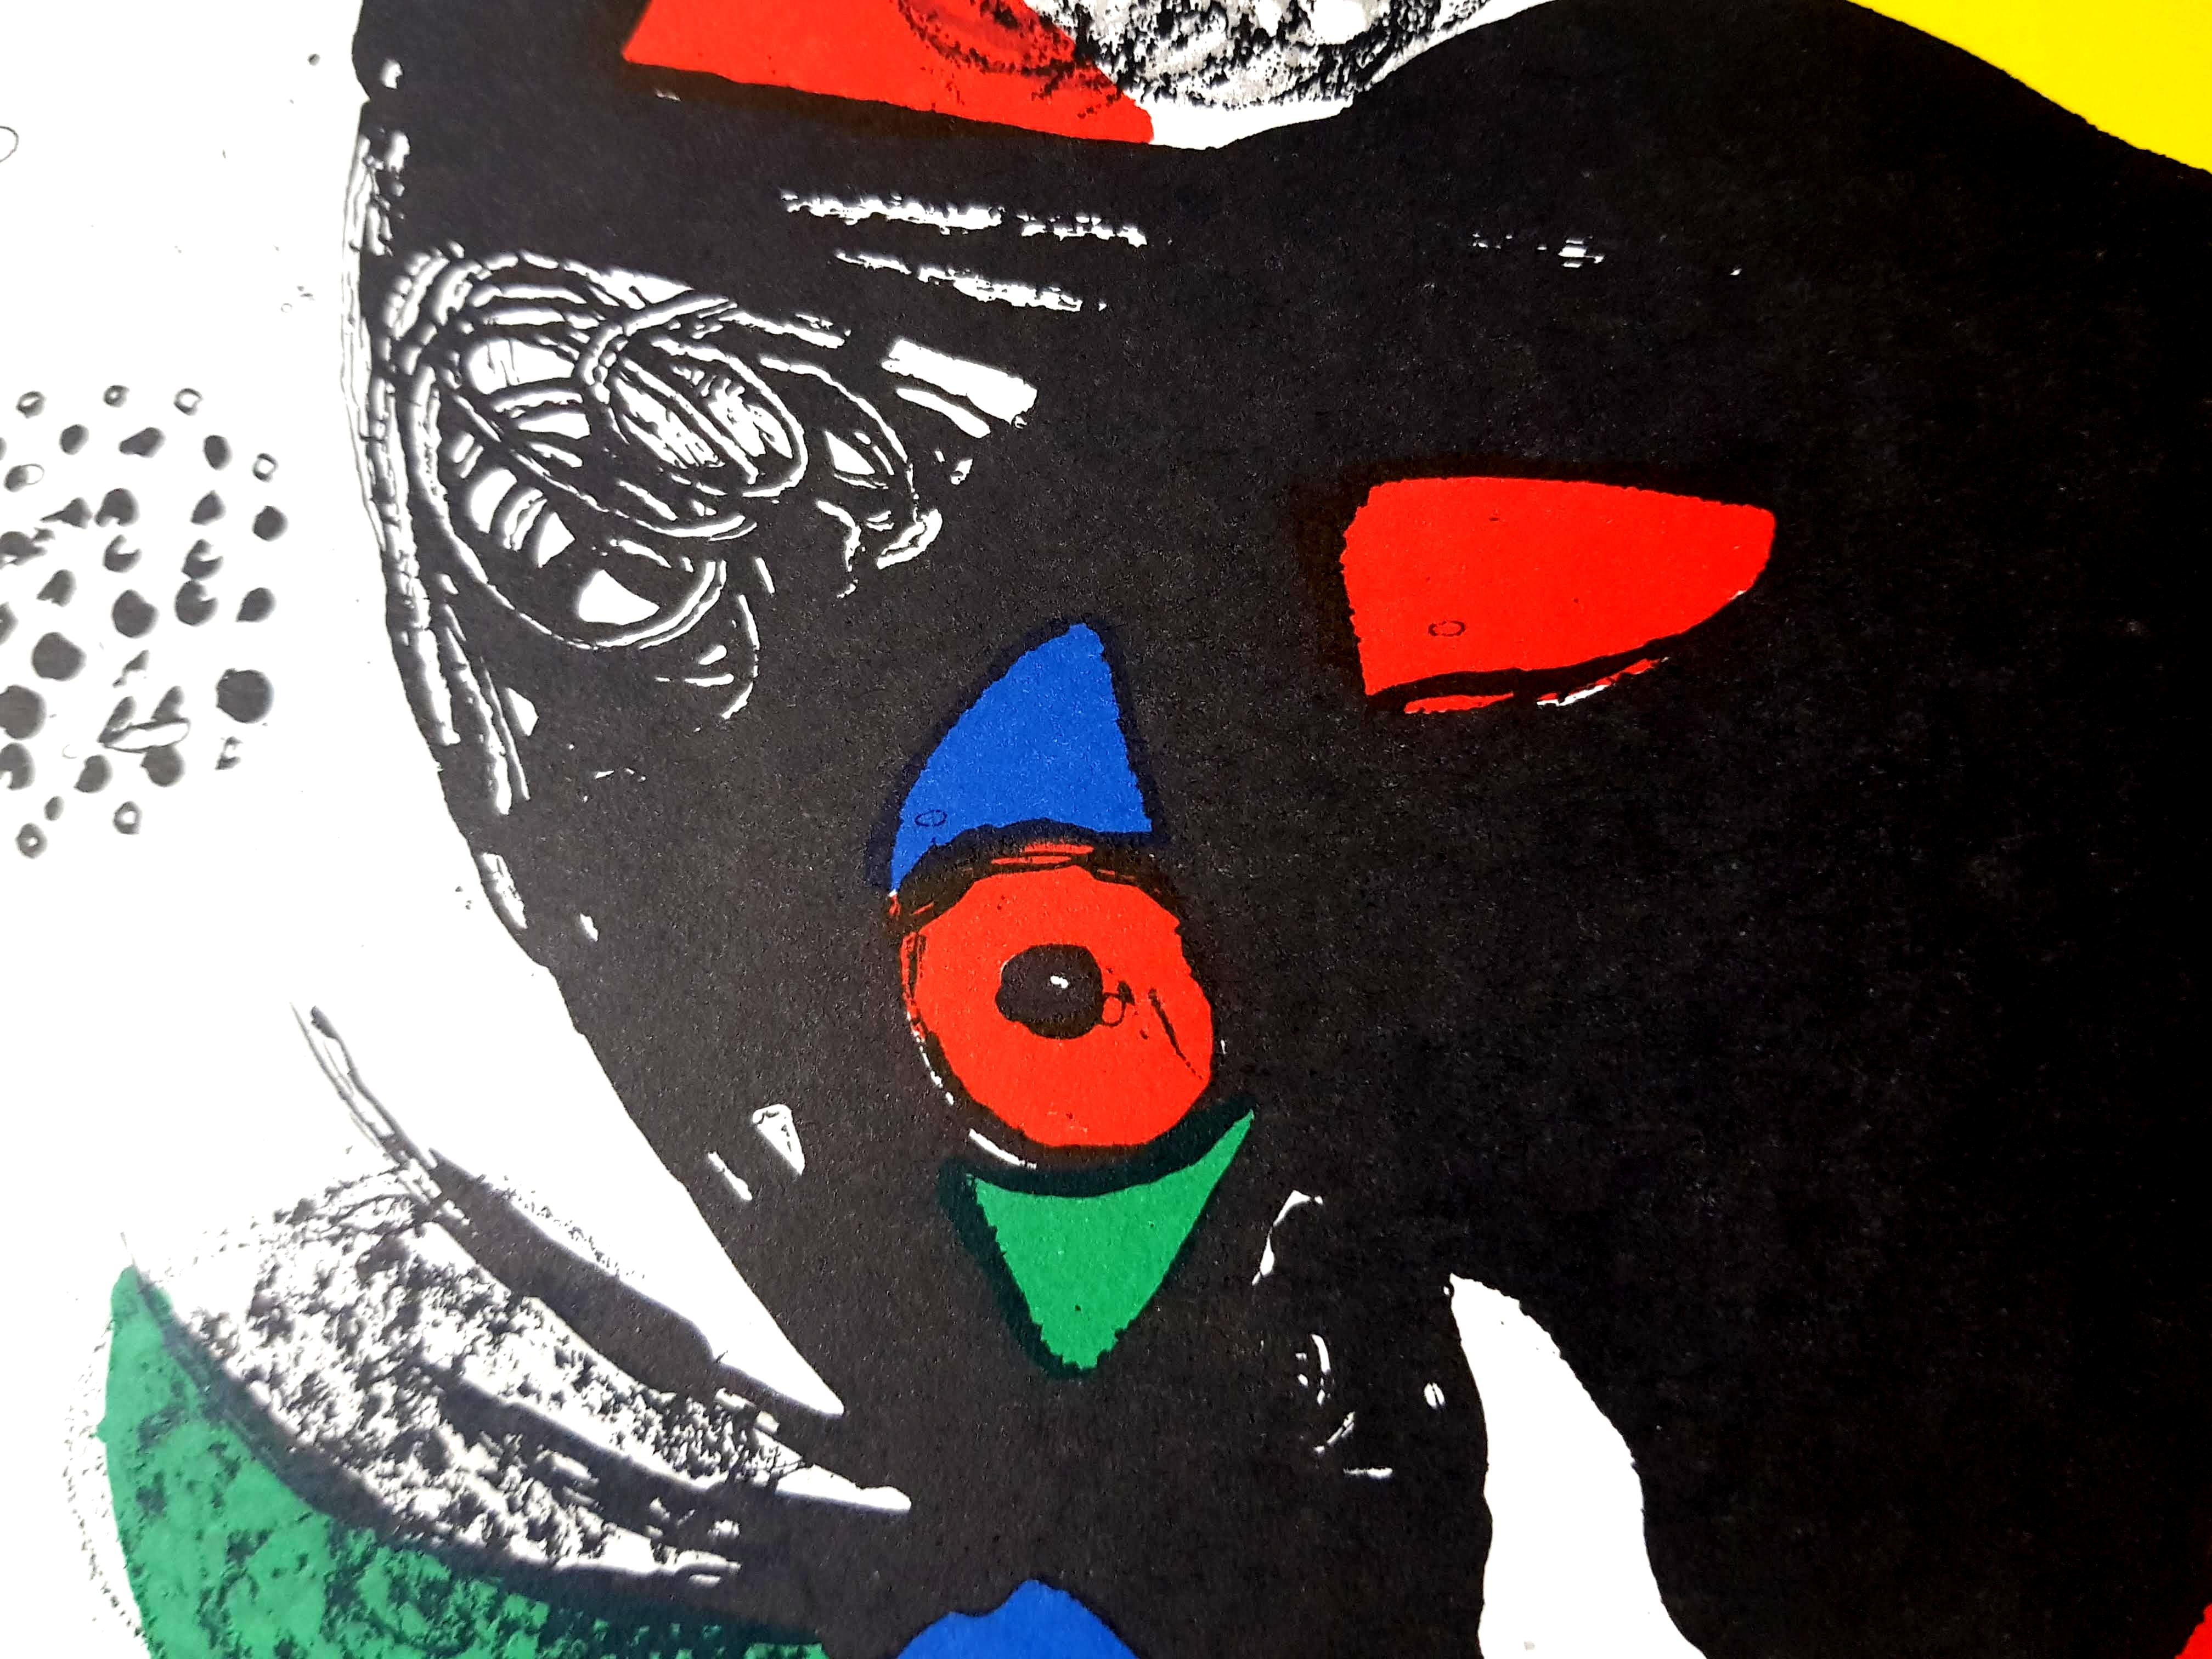 Joan Miro Miro Original Abstrakte Lithographie
Künstler: Joan Miro
Medium: Original-Lithographie auf Rives-Vellum
Mappe: Miro Lithographe IV
Jahr: 1981
Auflage: 5,000
Bildgröße: 10